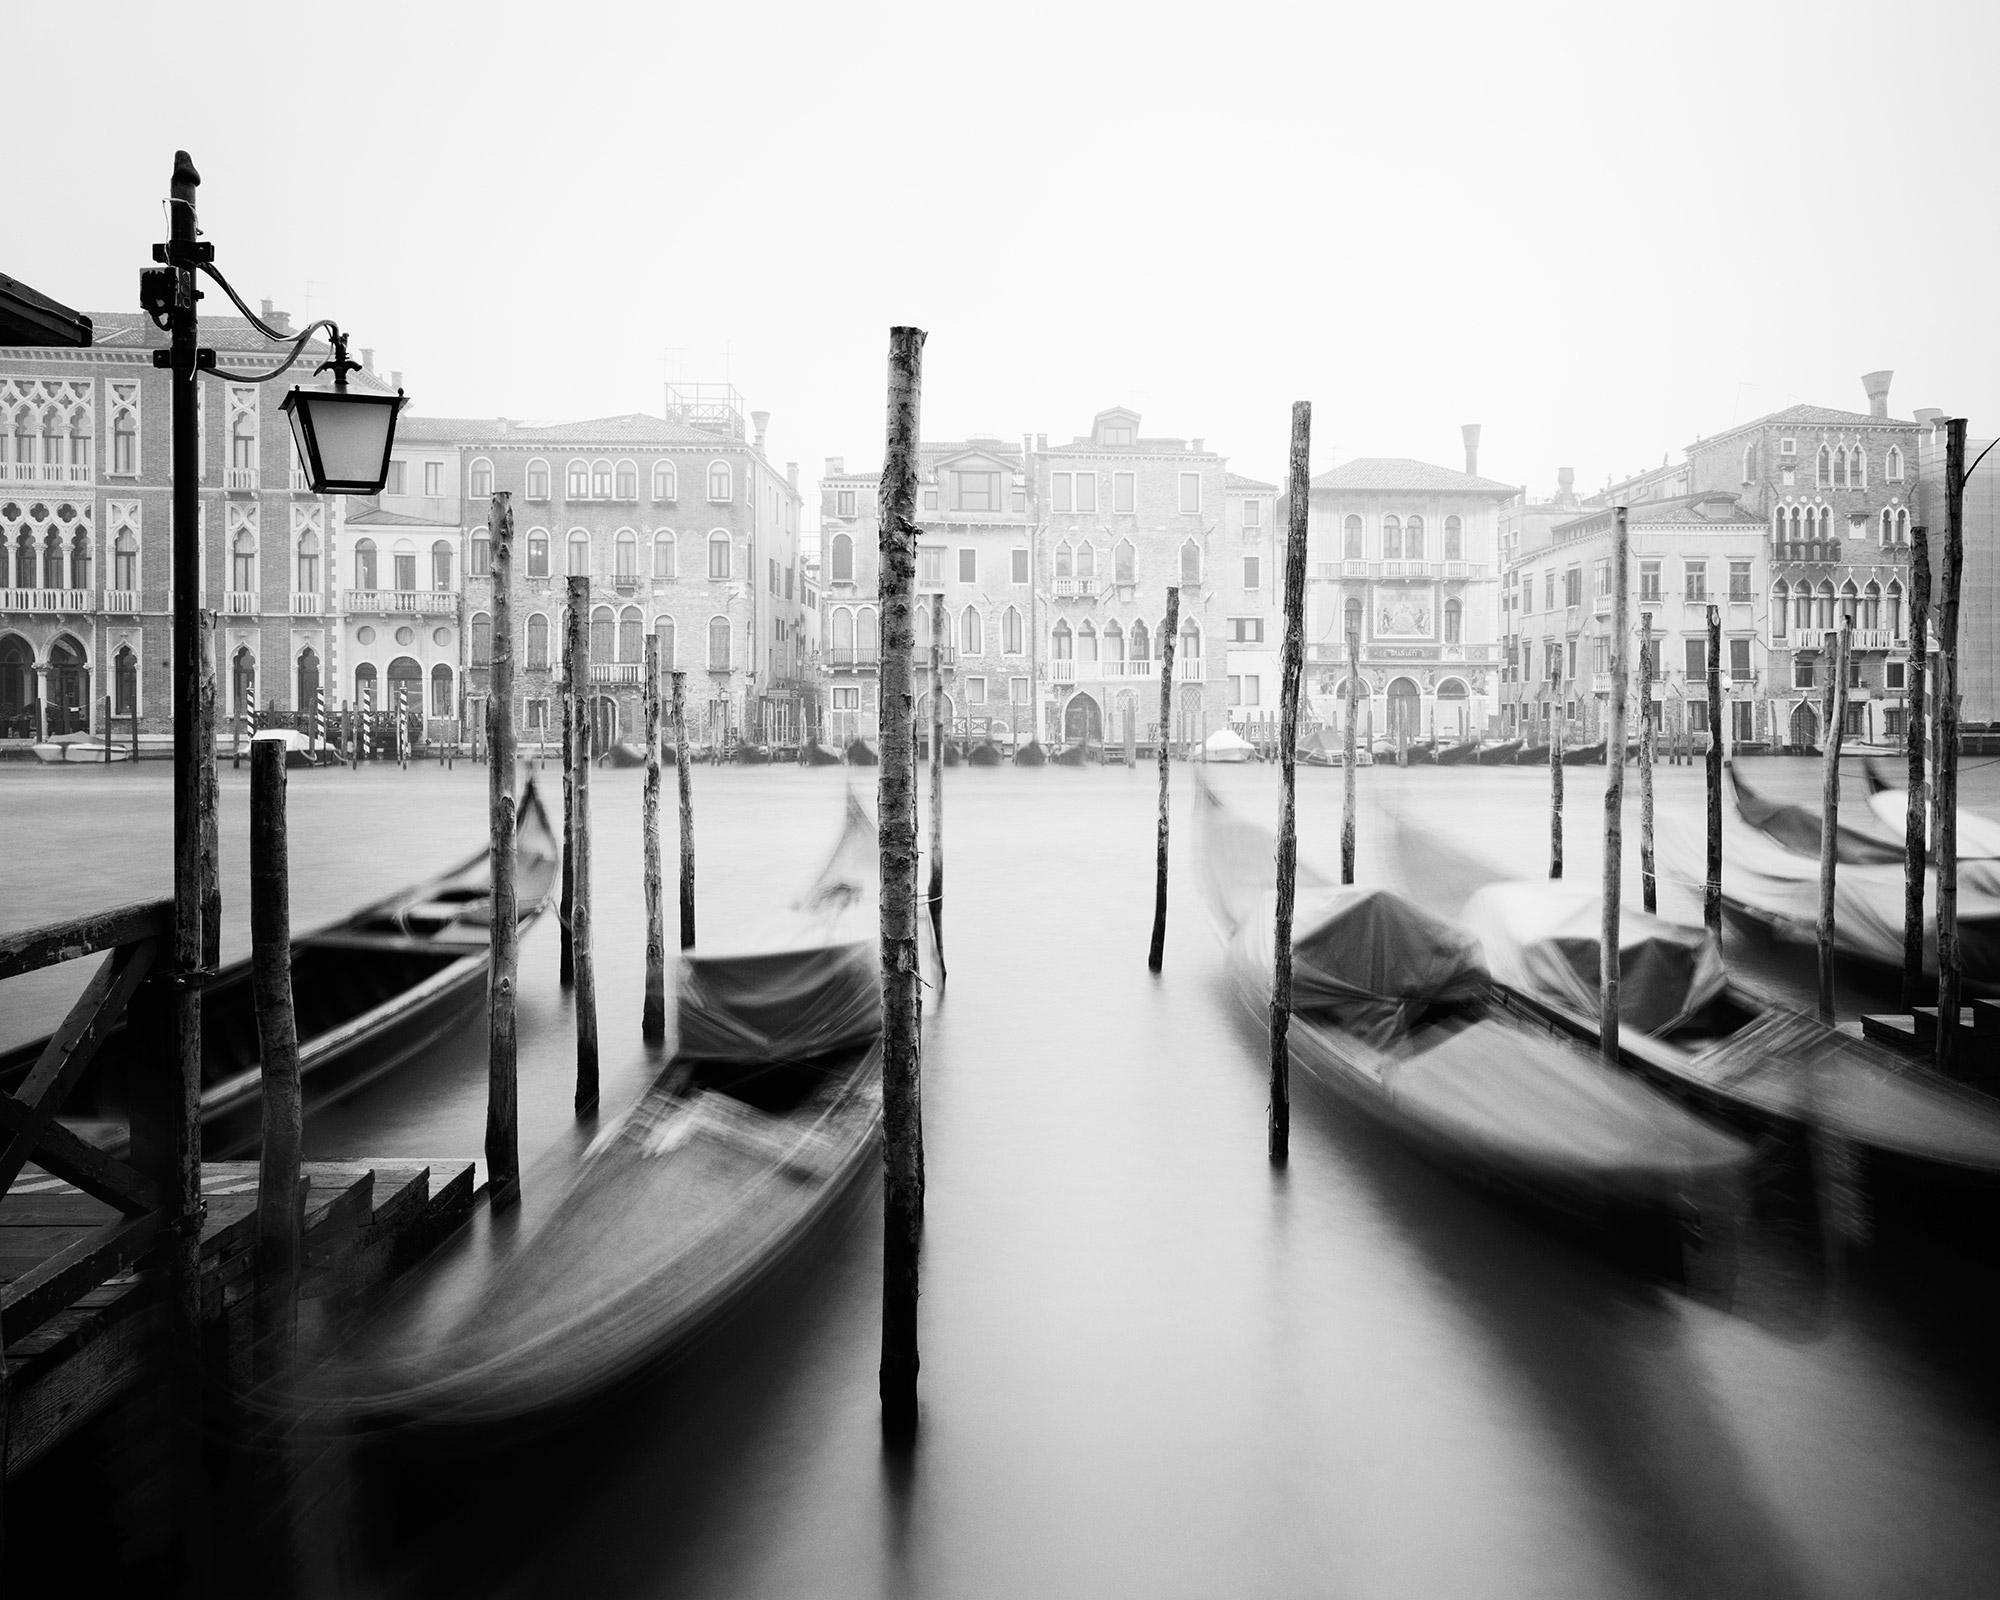 Gondola, Canal Grande, Venice, black and white fine art cityscape photography